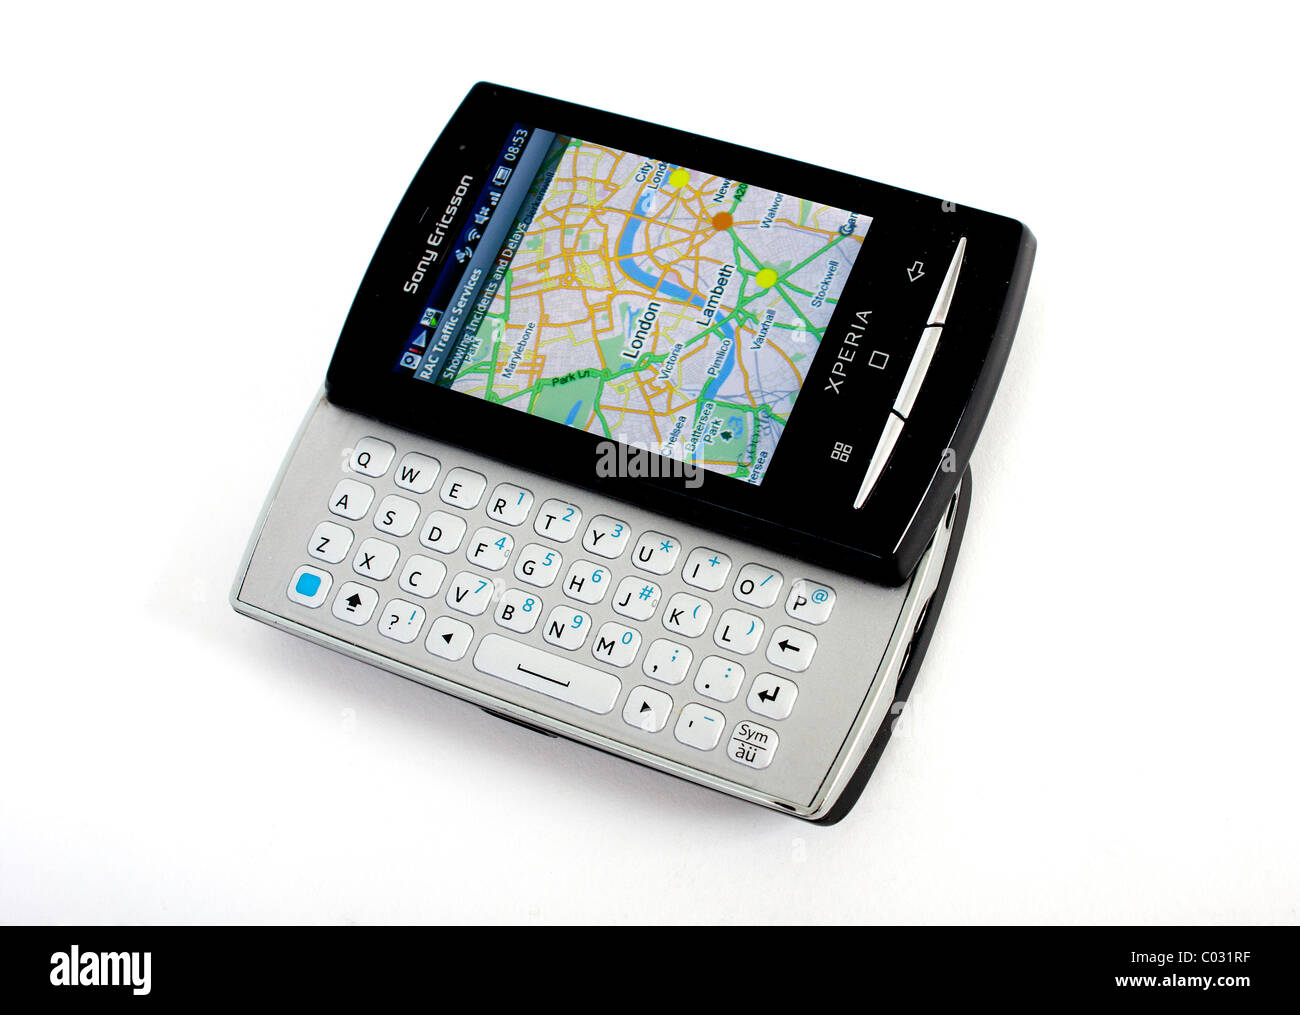 Un Sony Ericsson Xperia mini pro téléphone mobile sur un fond blanc comme une image de marque du produit à l'aide de la sat nav Banque D'Images